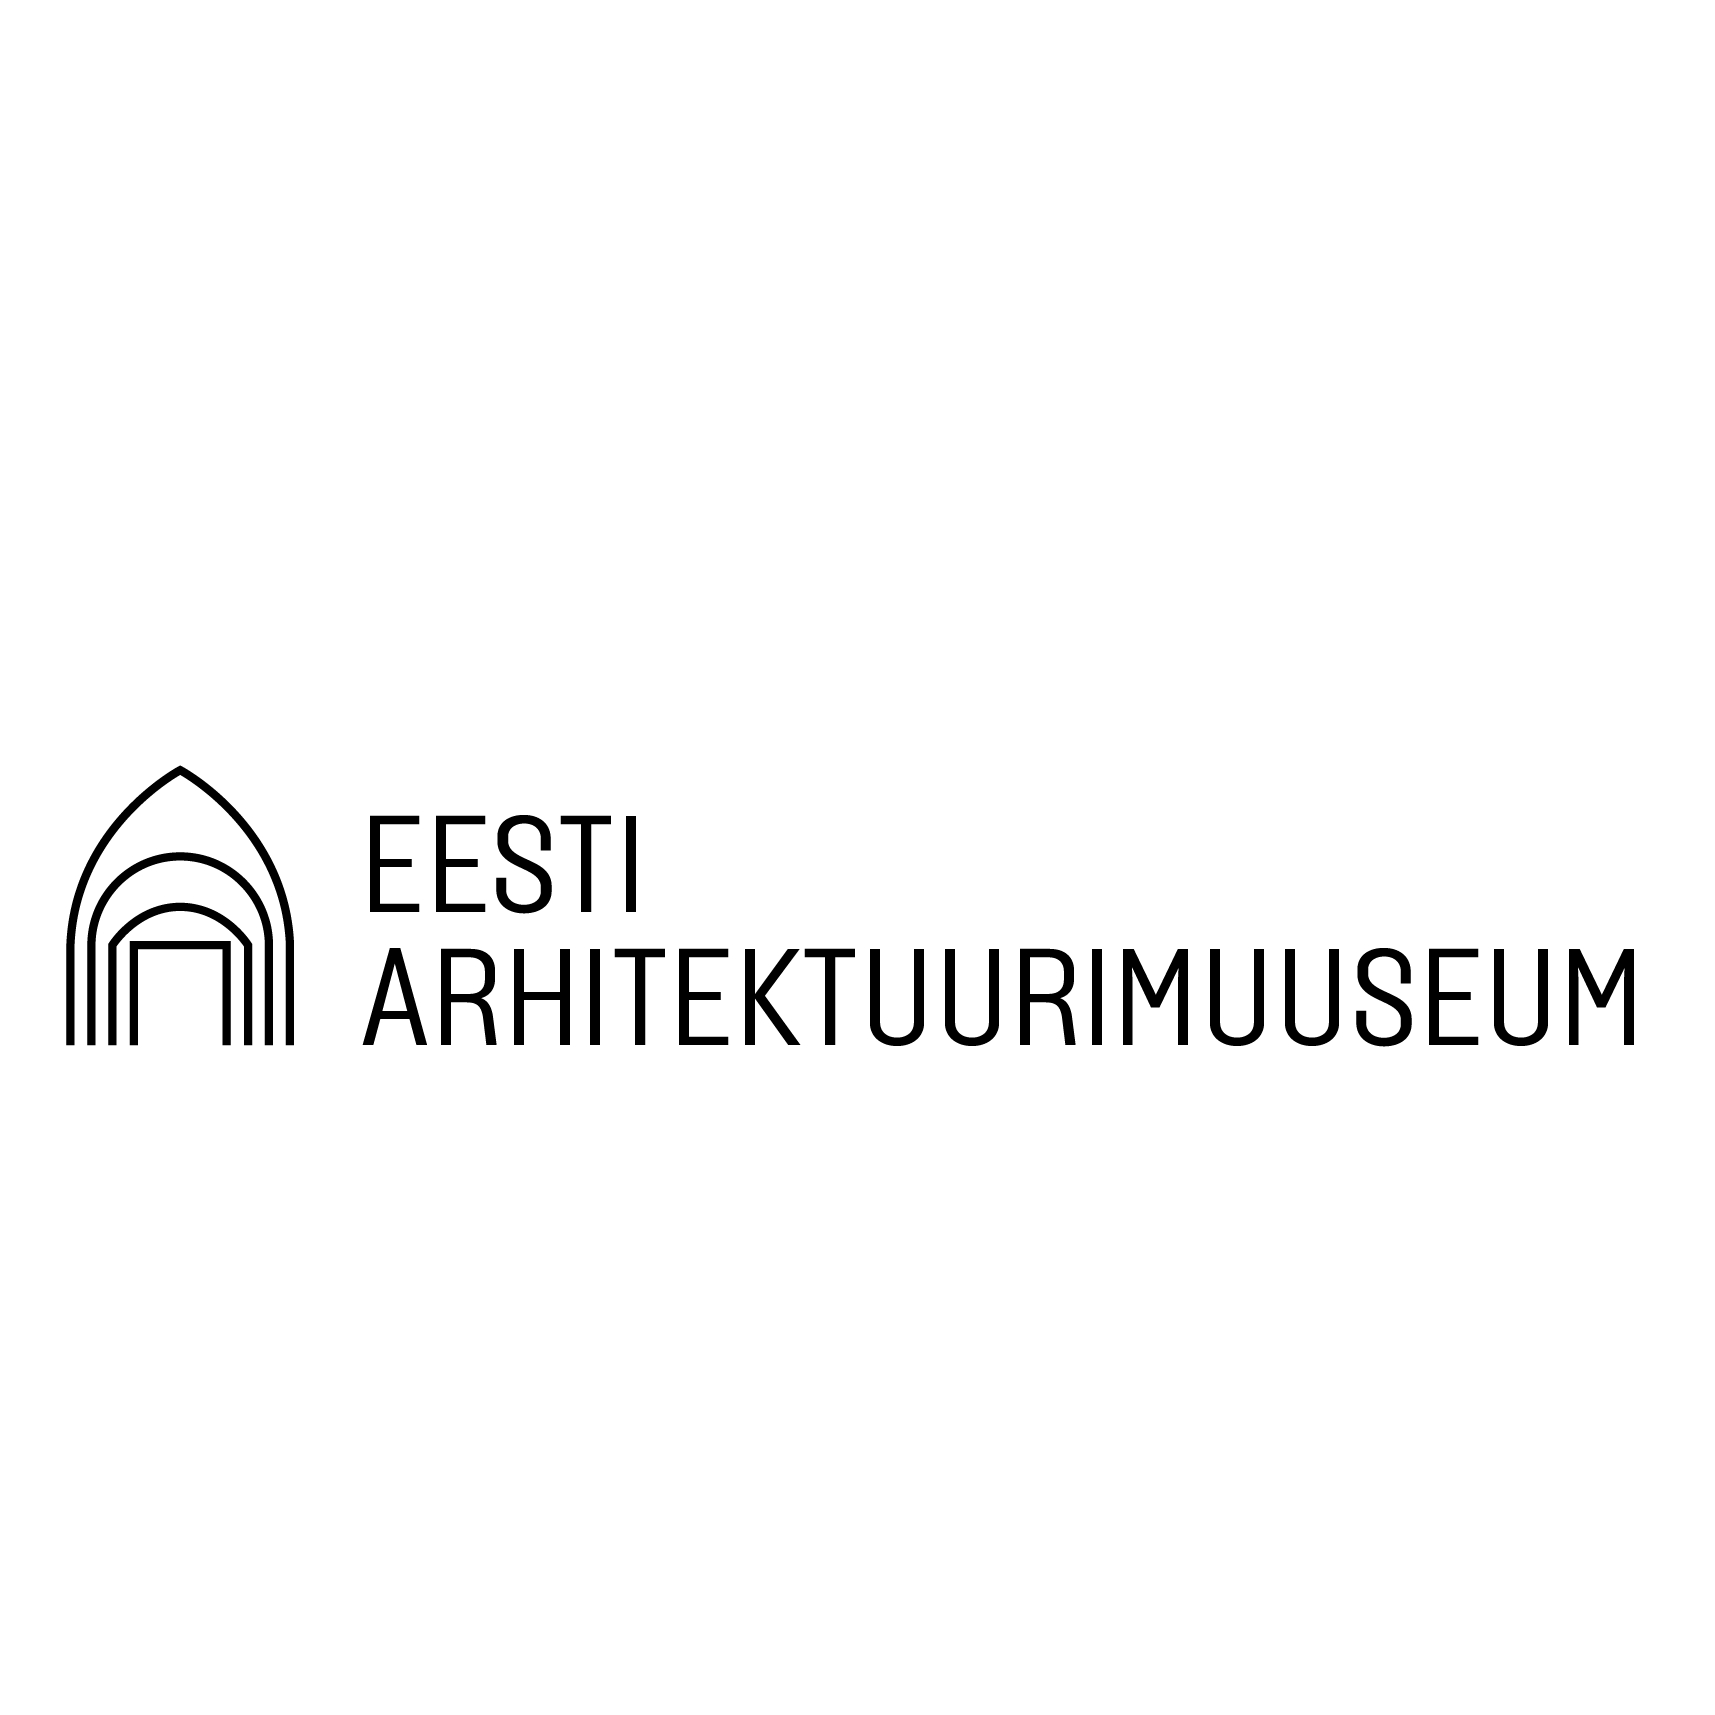 EESTI ARHITEKTUURIMUUSEUM logo